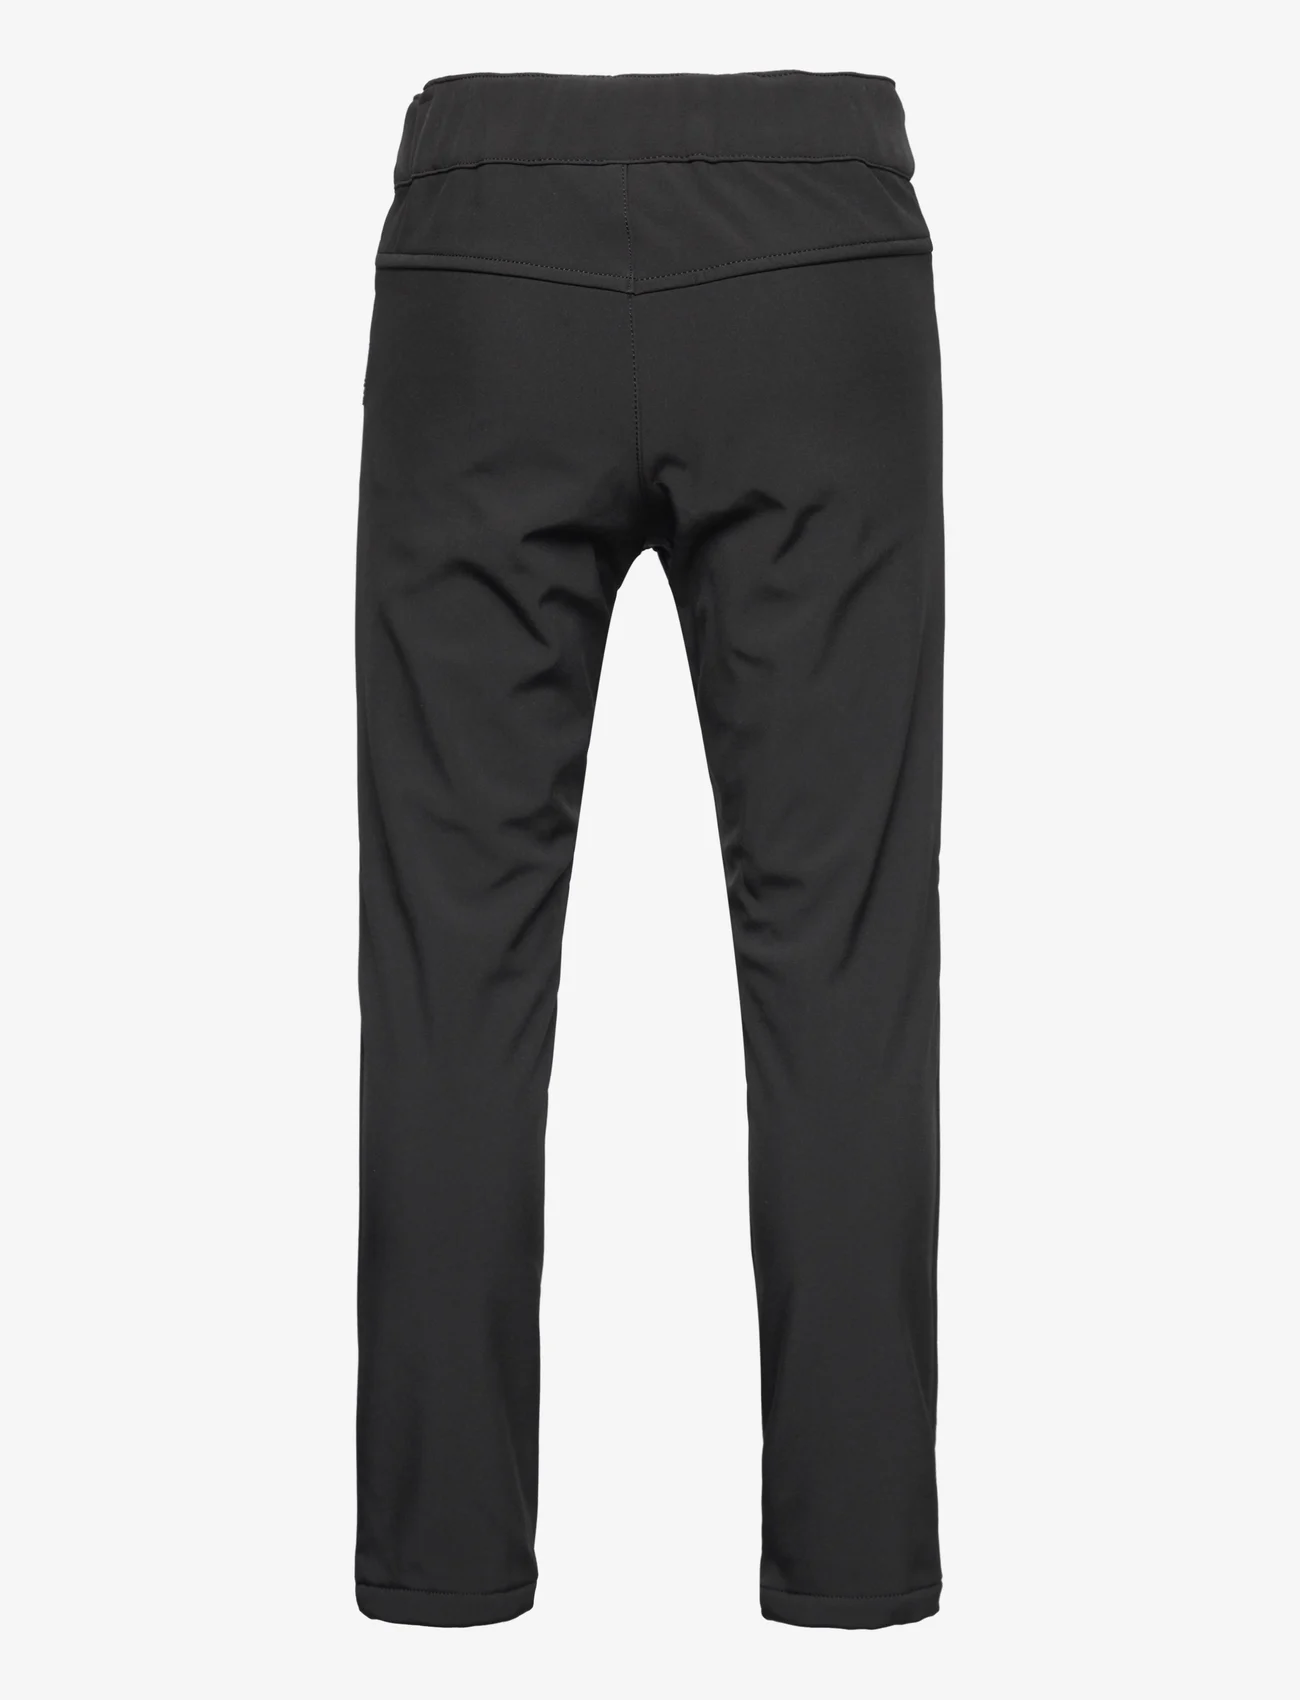 Reima - Softshell pants, Idea - kinder - black - 1